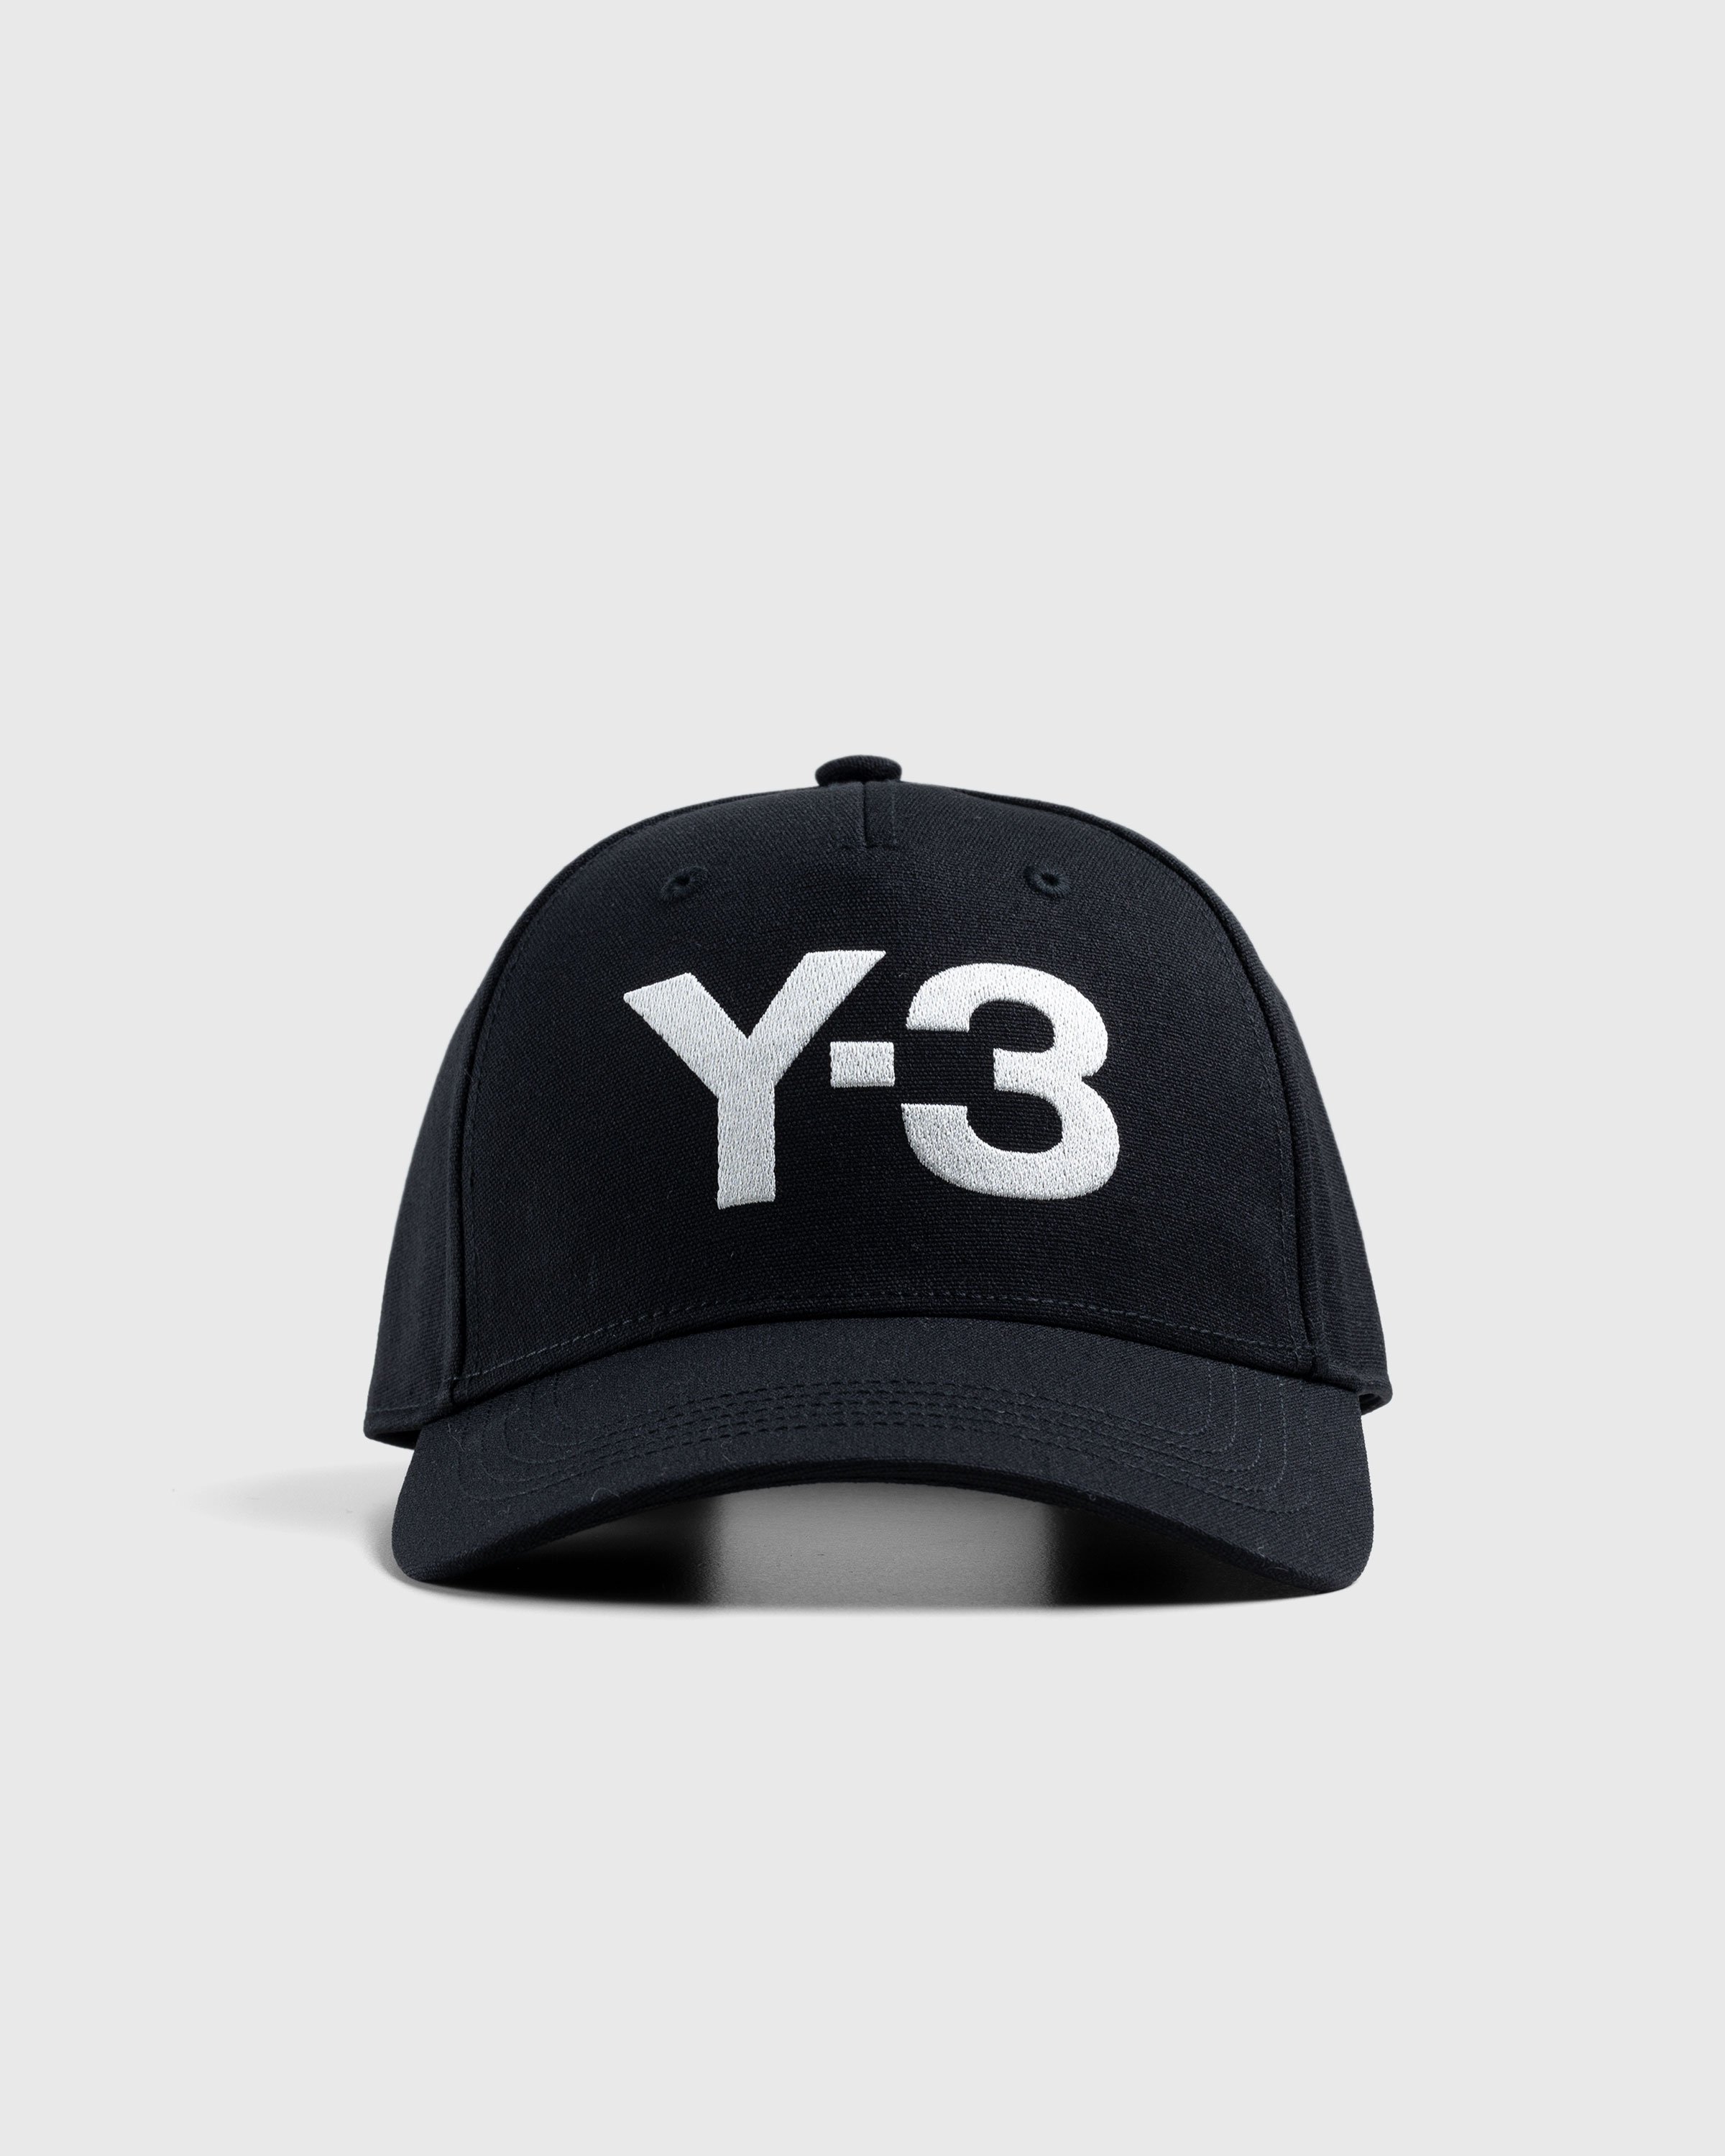 Y-3 - Logo Cap Black - Accessories - Black - Image 2